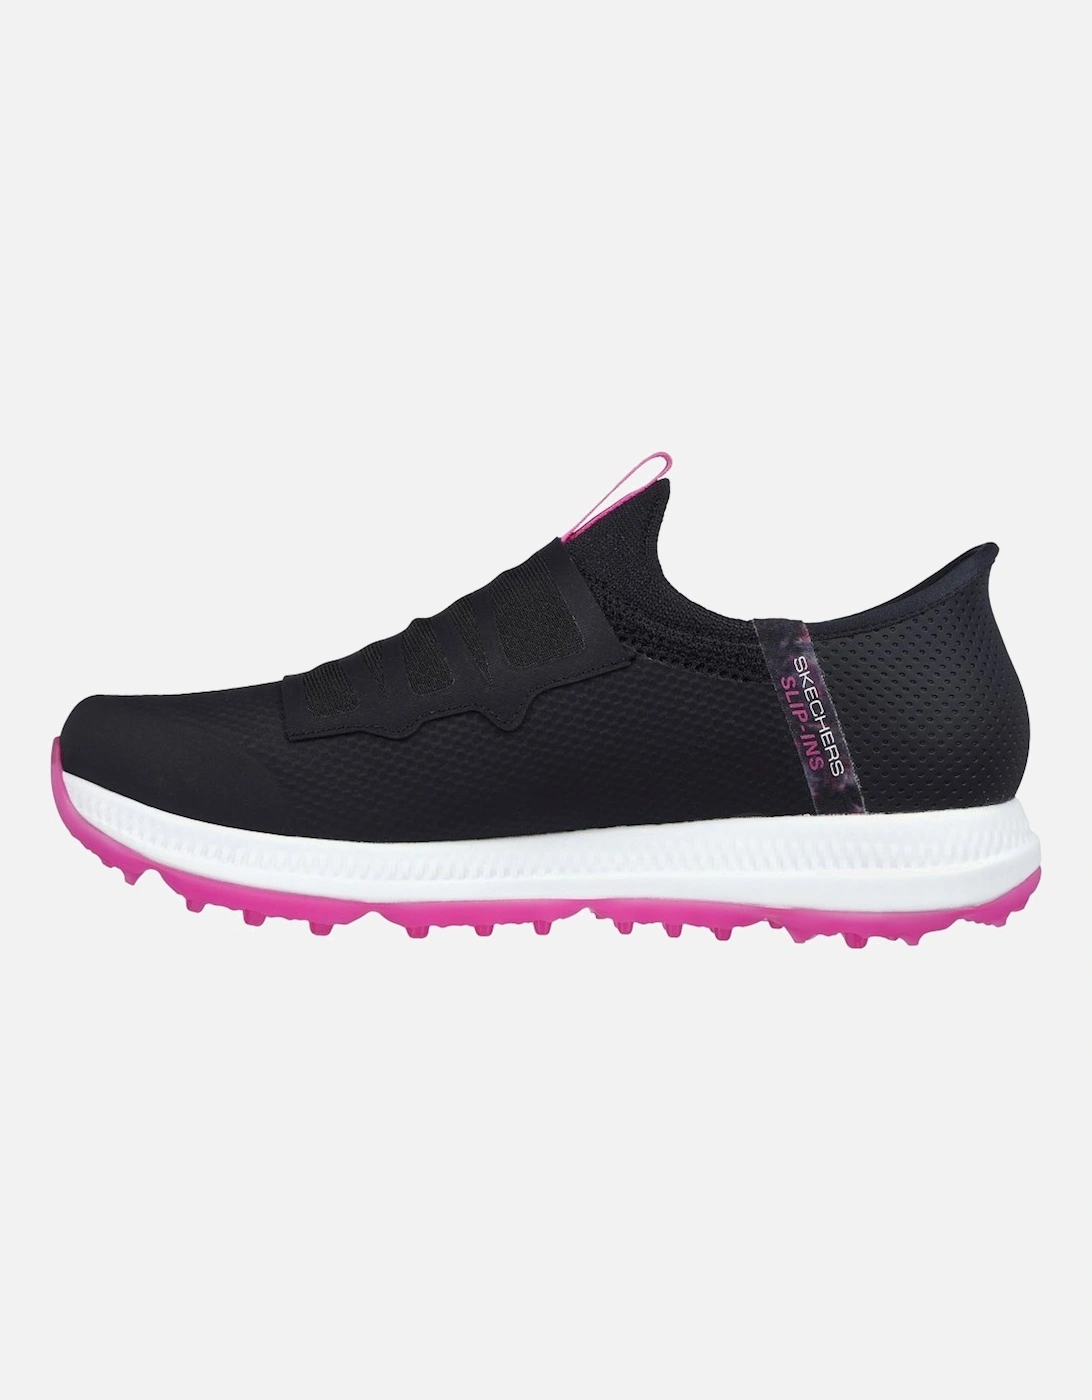 GO Golf Elite 5 Slip In Womens Golf Shoes